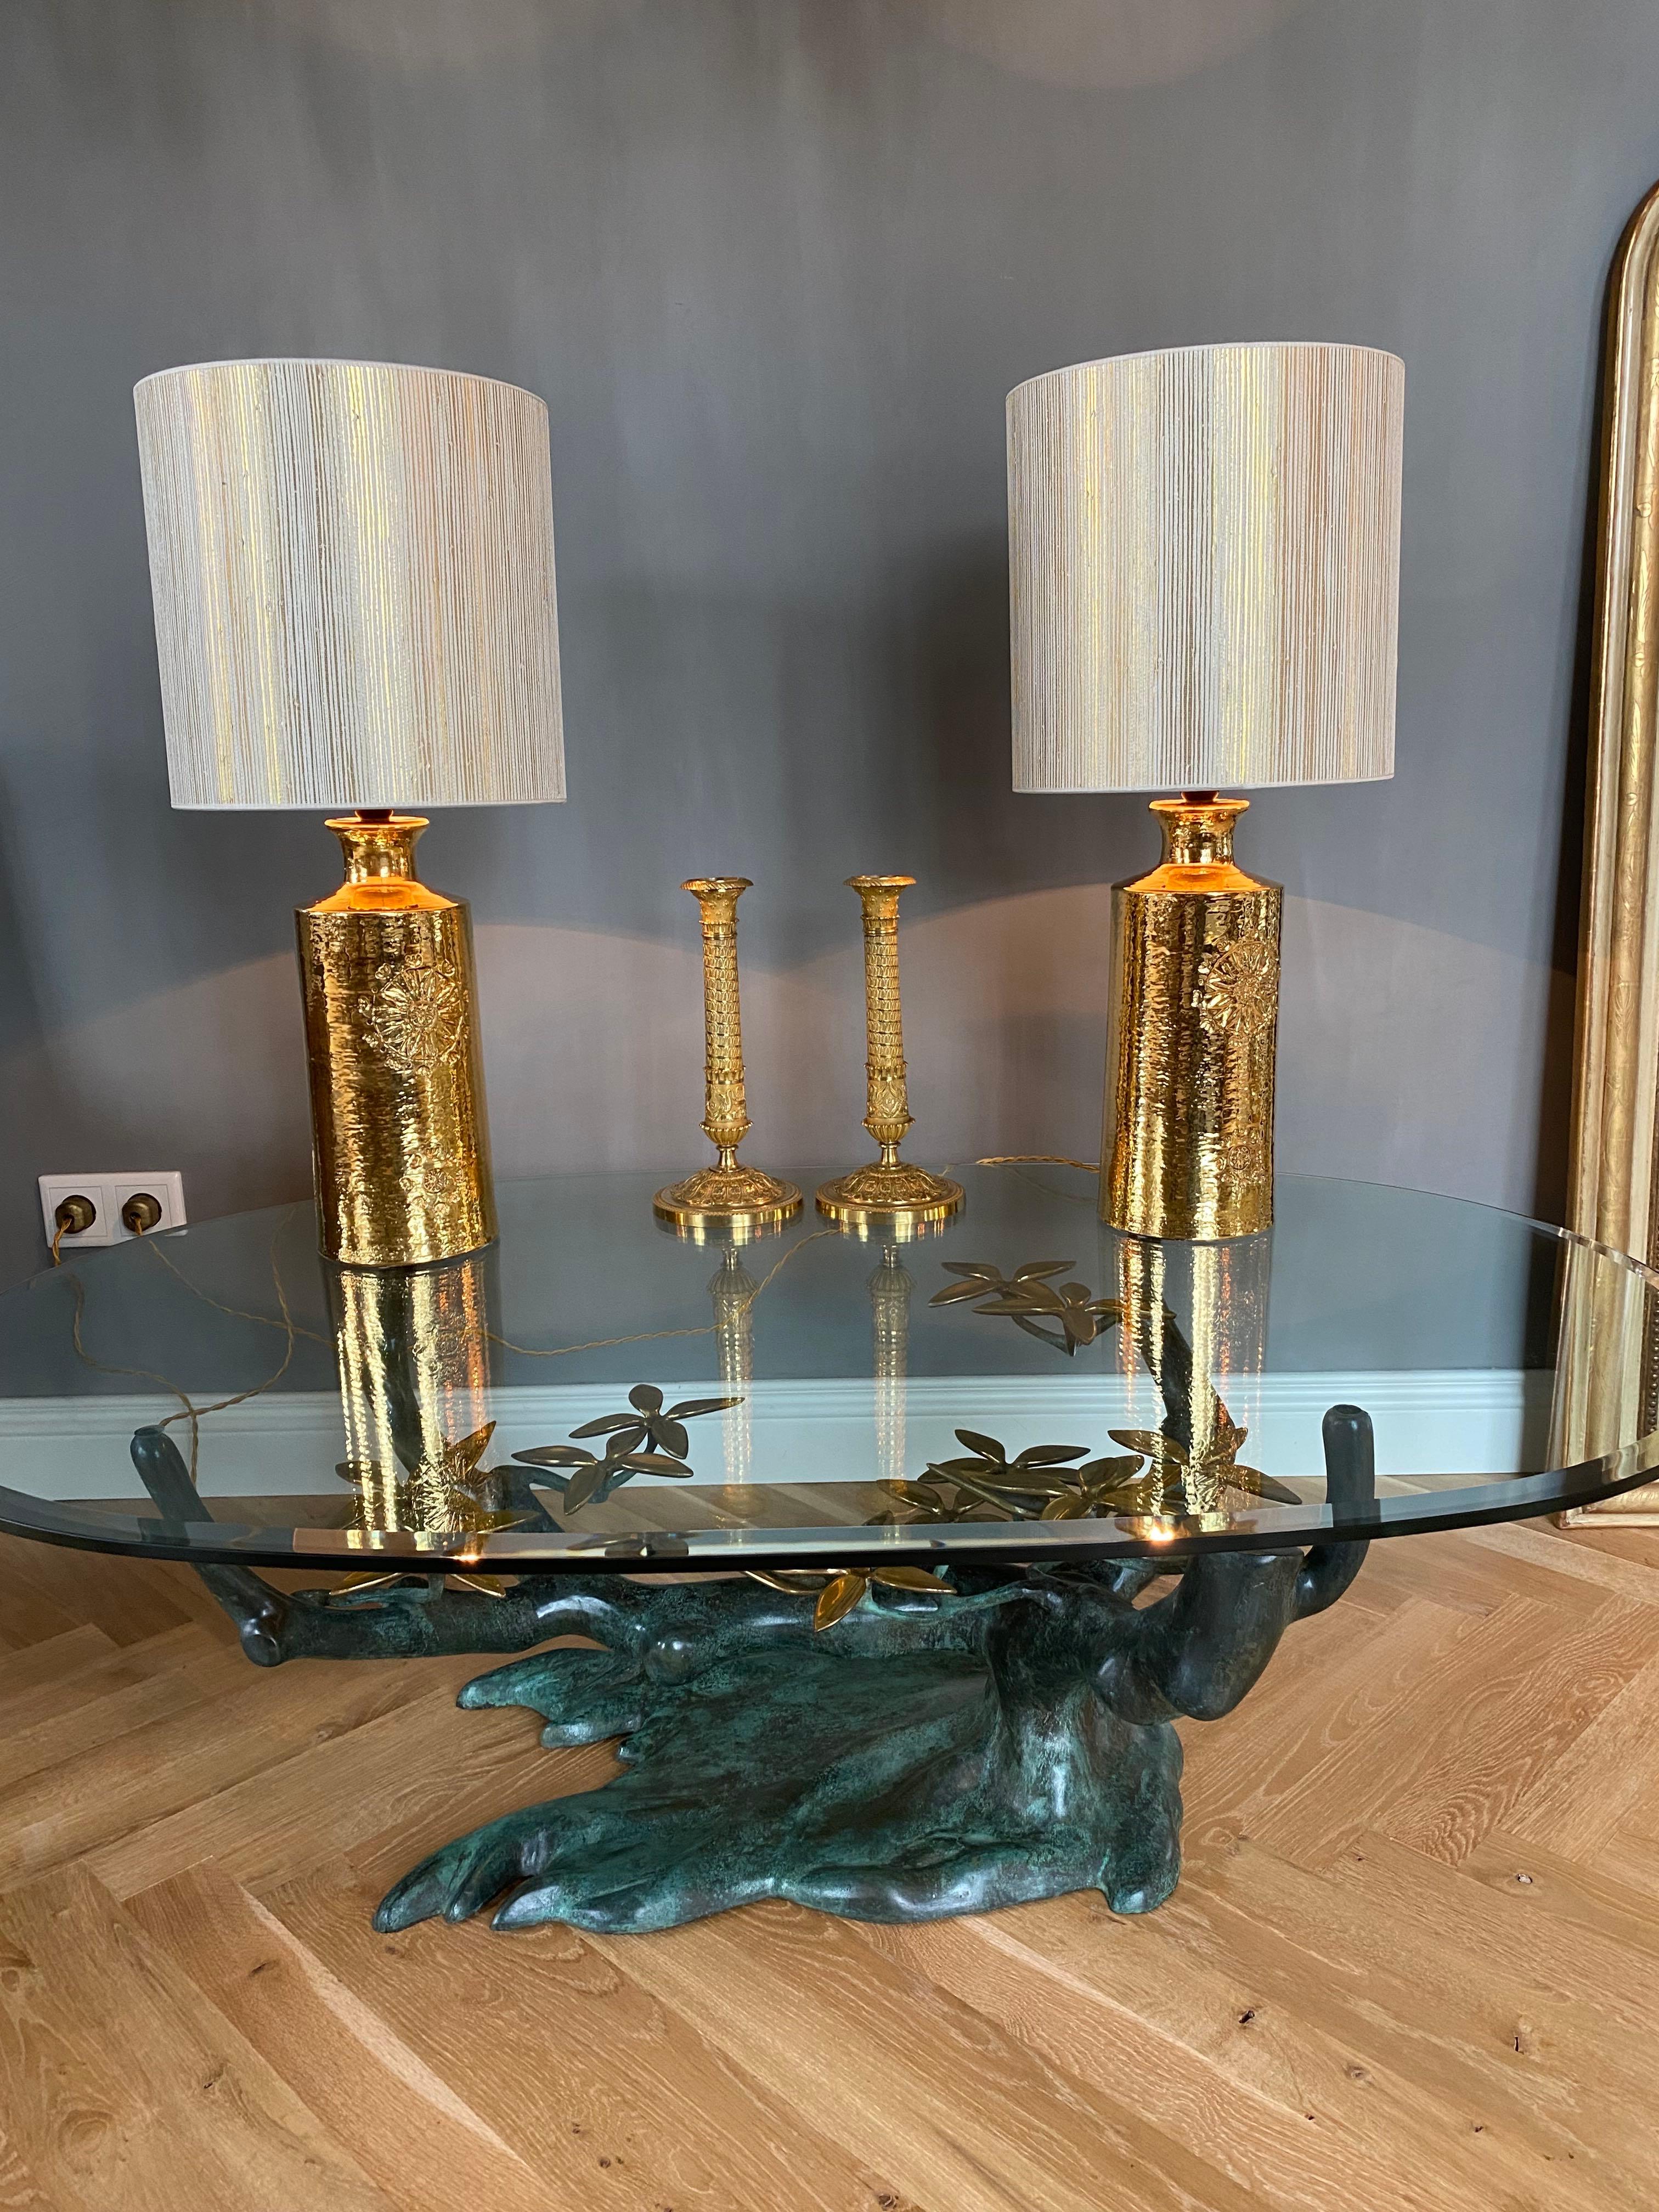 Sehr schönes & schickes Paar Keramik-Tischlampen, entworfen von Bitossi für Bergboms- Schweden.
Diese fabelhaften Lampen sind vergoldet und haben ein Blumendekor auf der Vorderseite.
Zeitraum - ca. 1960-1970
Herkunftsort - Italien/Schweden
Etikett